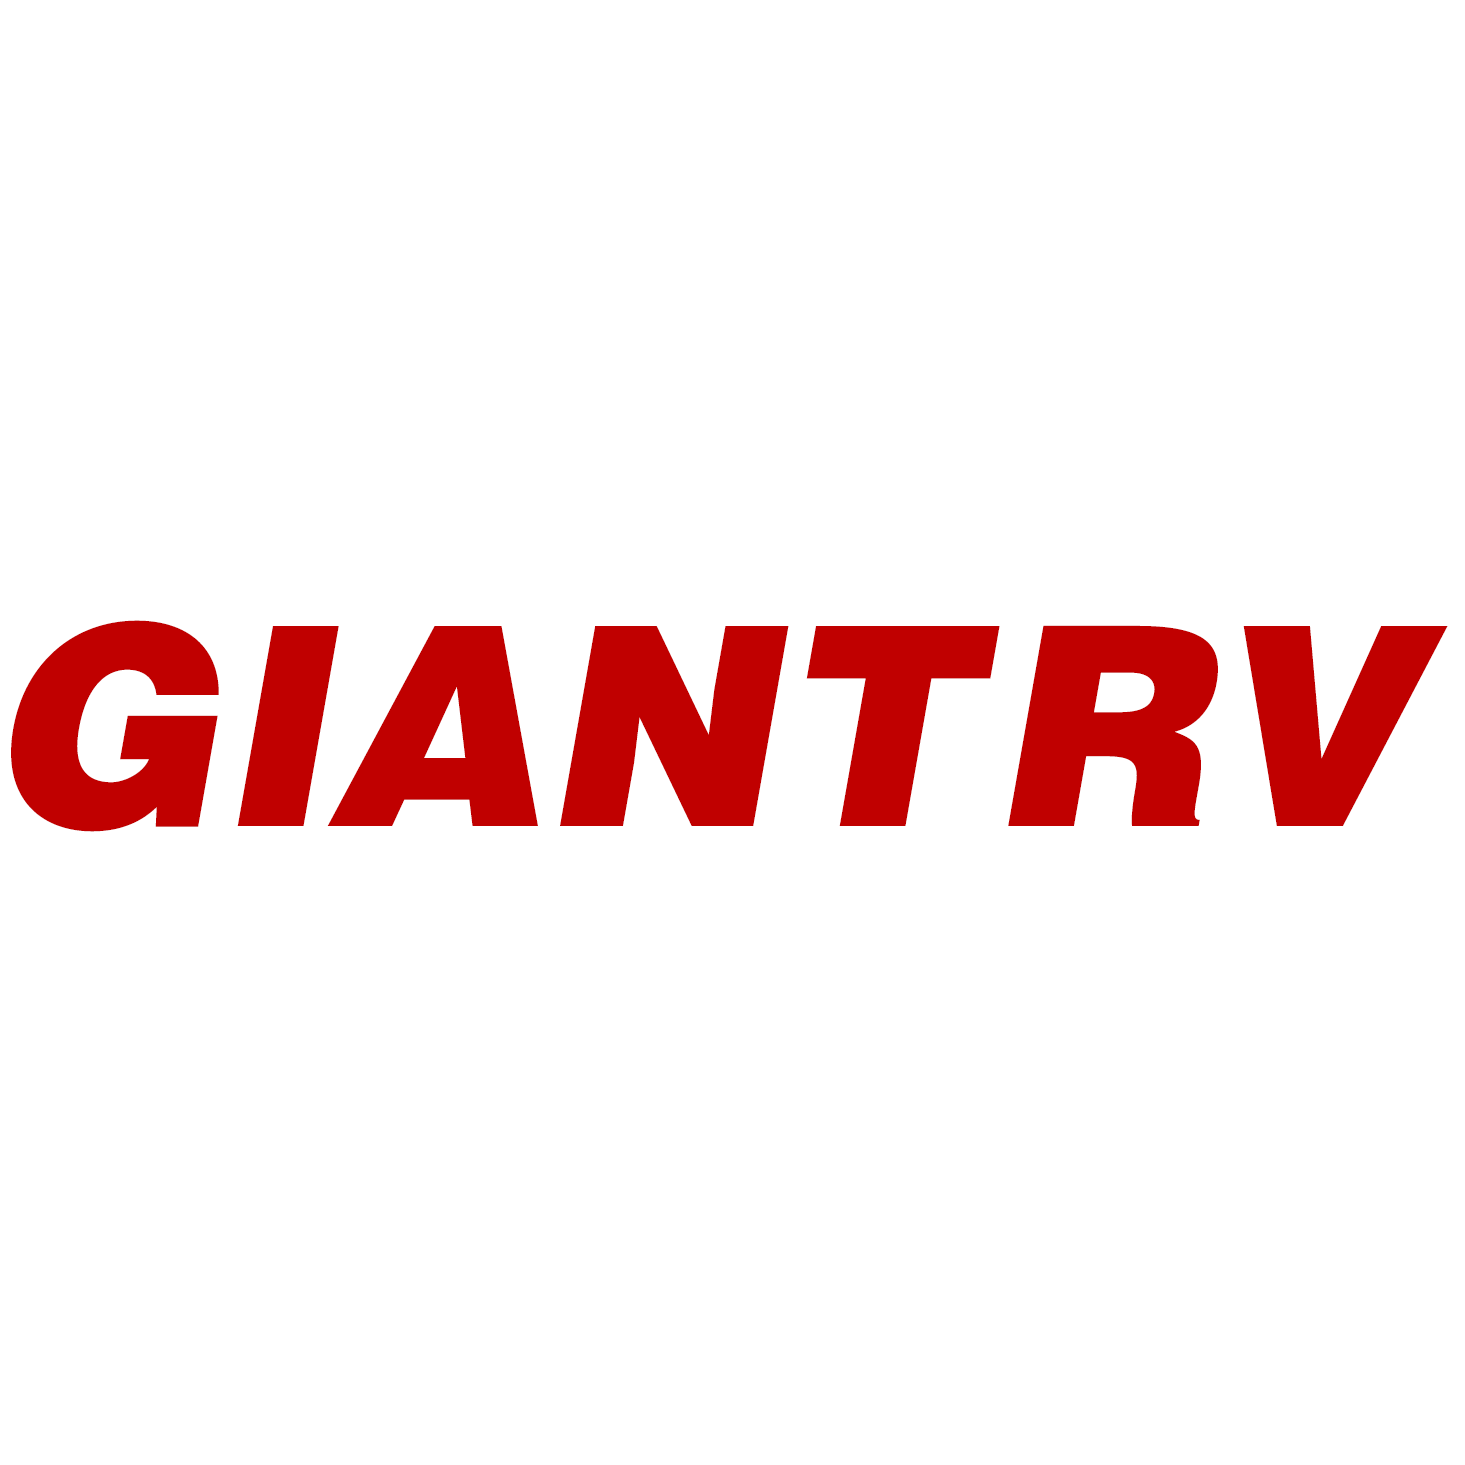 Giant RV-Colton Photo